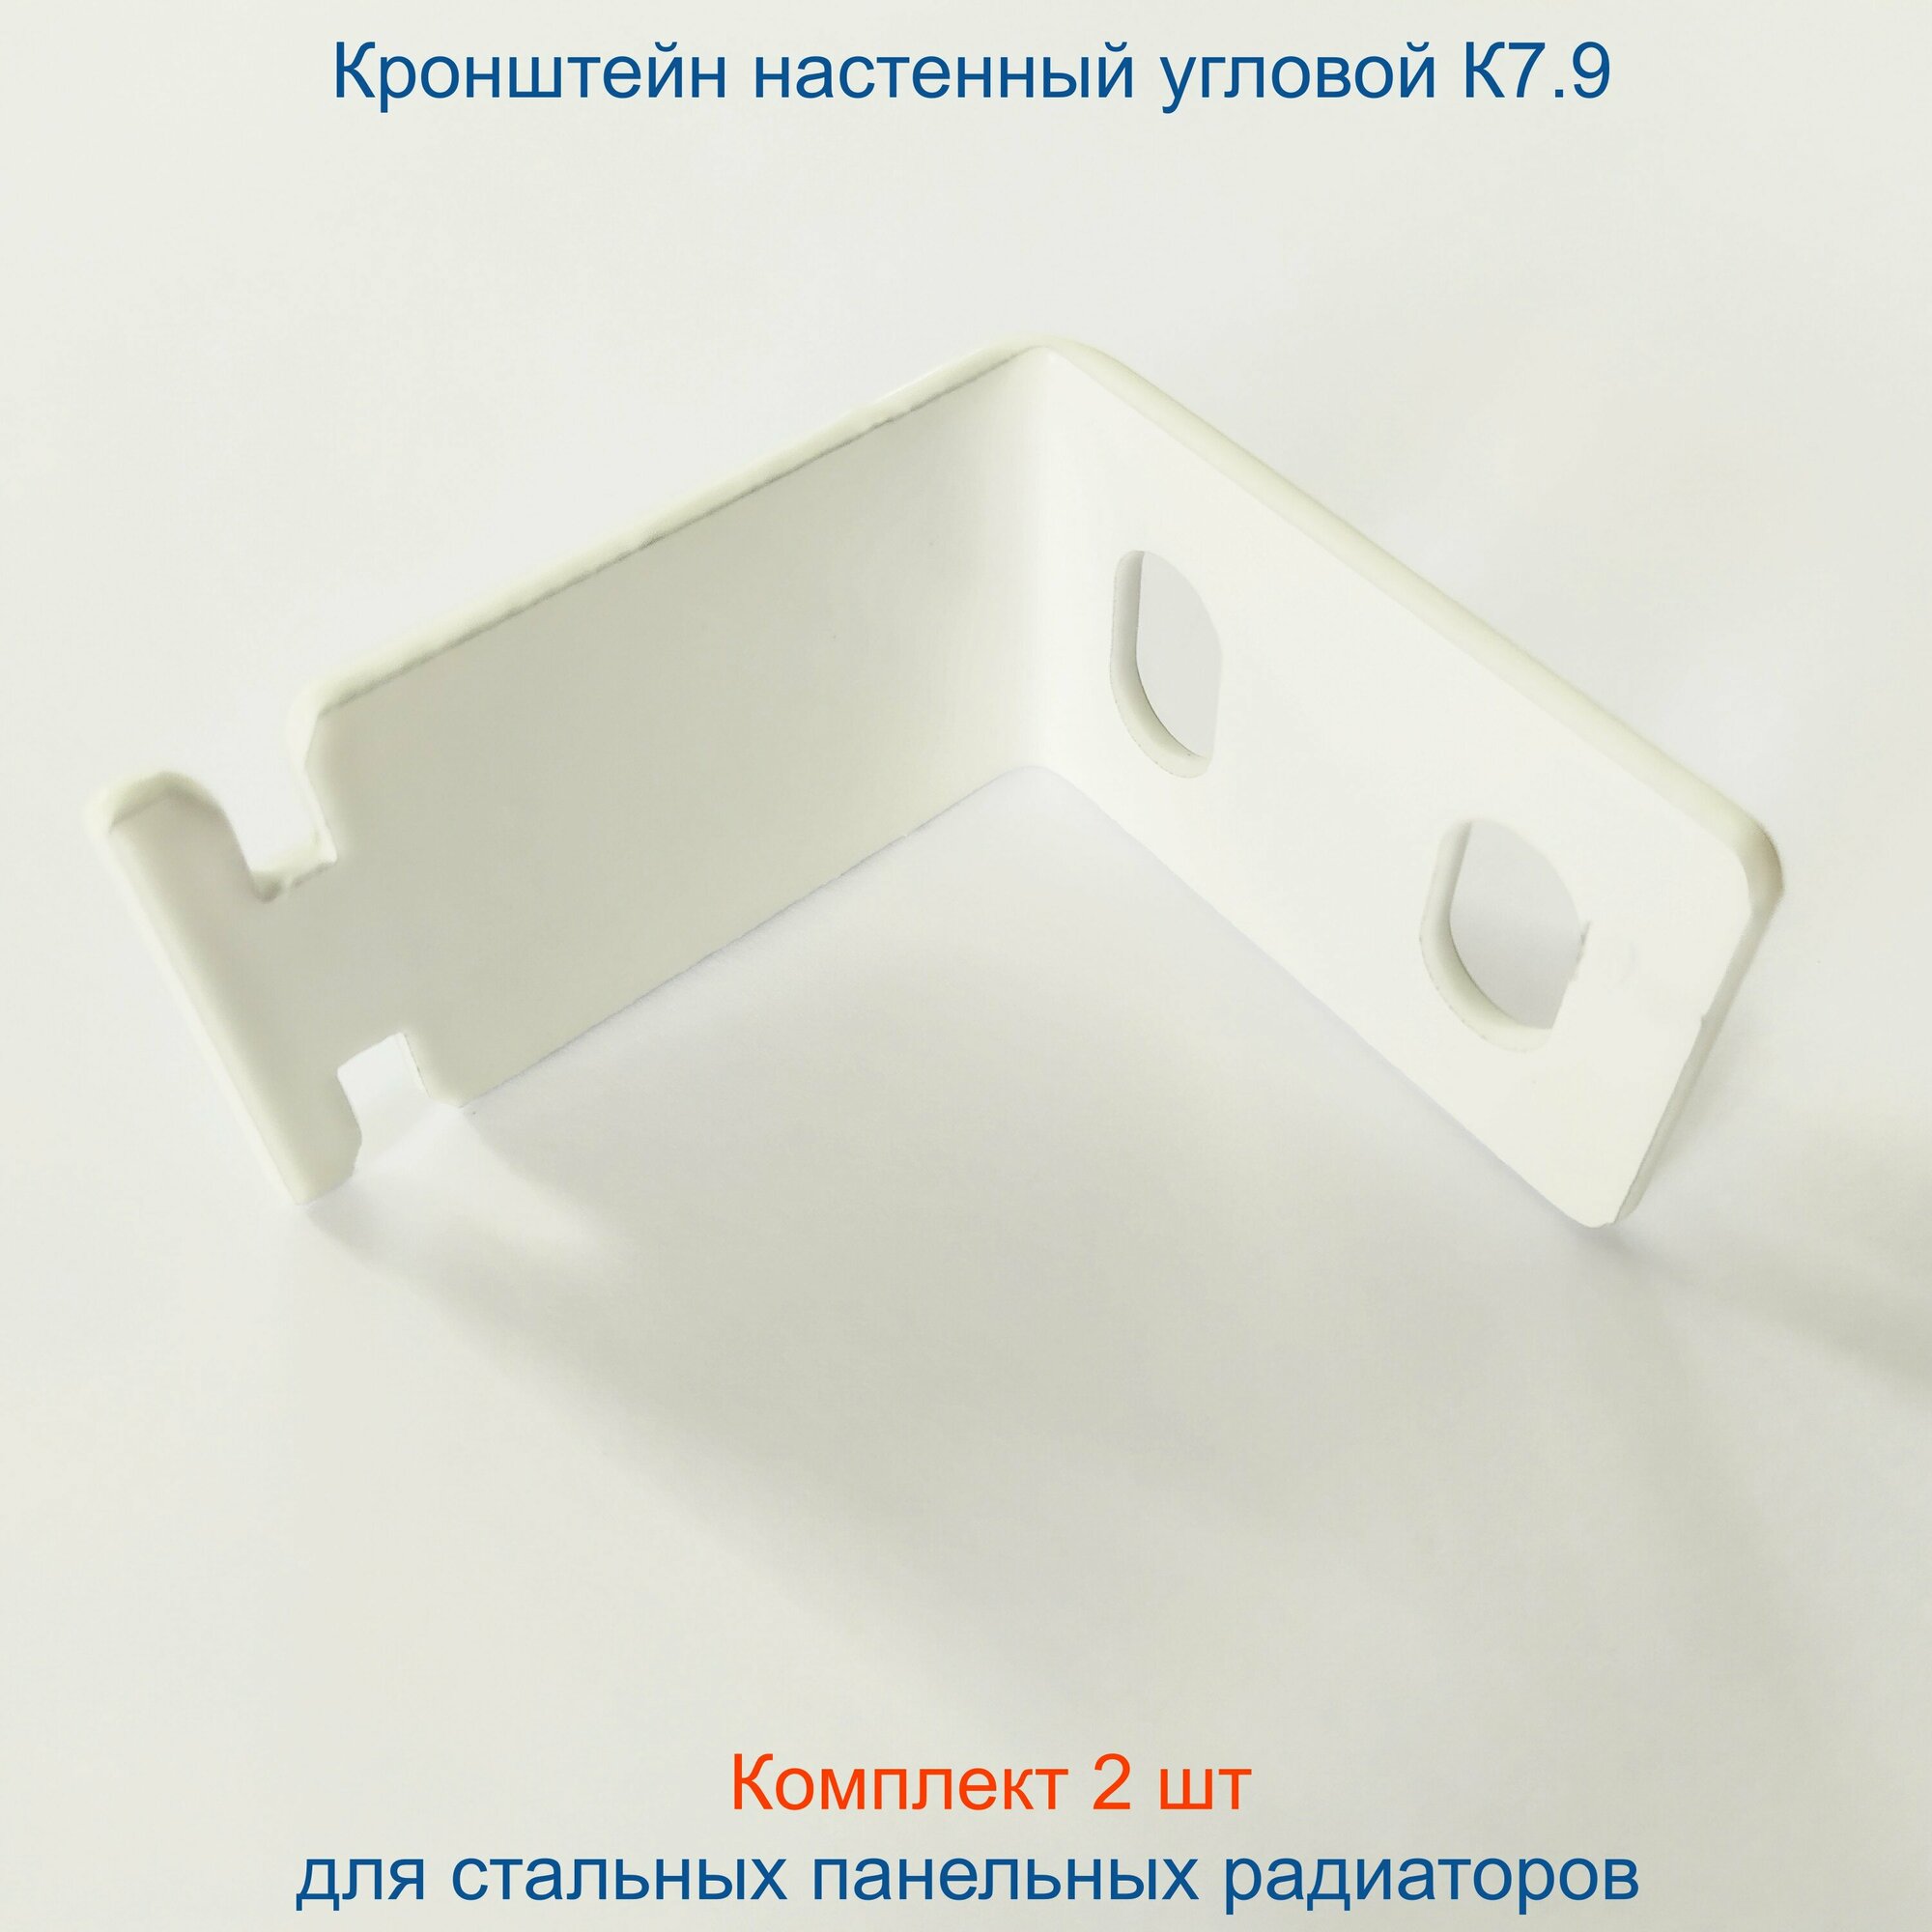 Кронштейн угловой Кайрос для стальных панельных радиаторов К7.9, комплект 2 шт